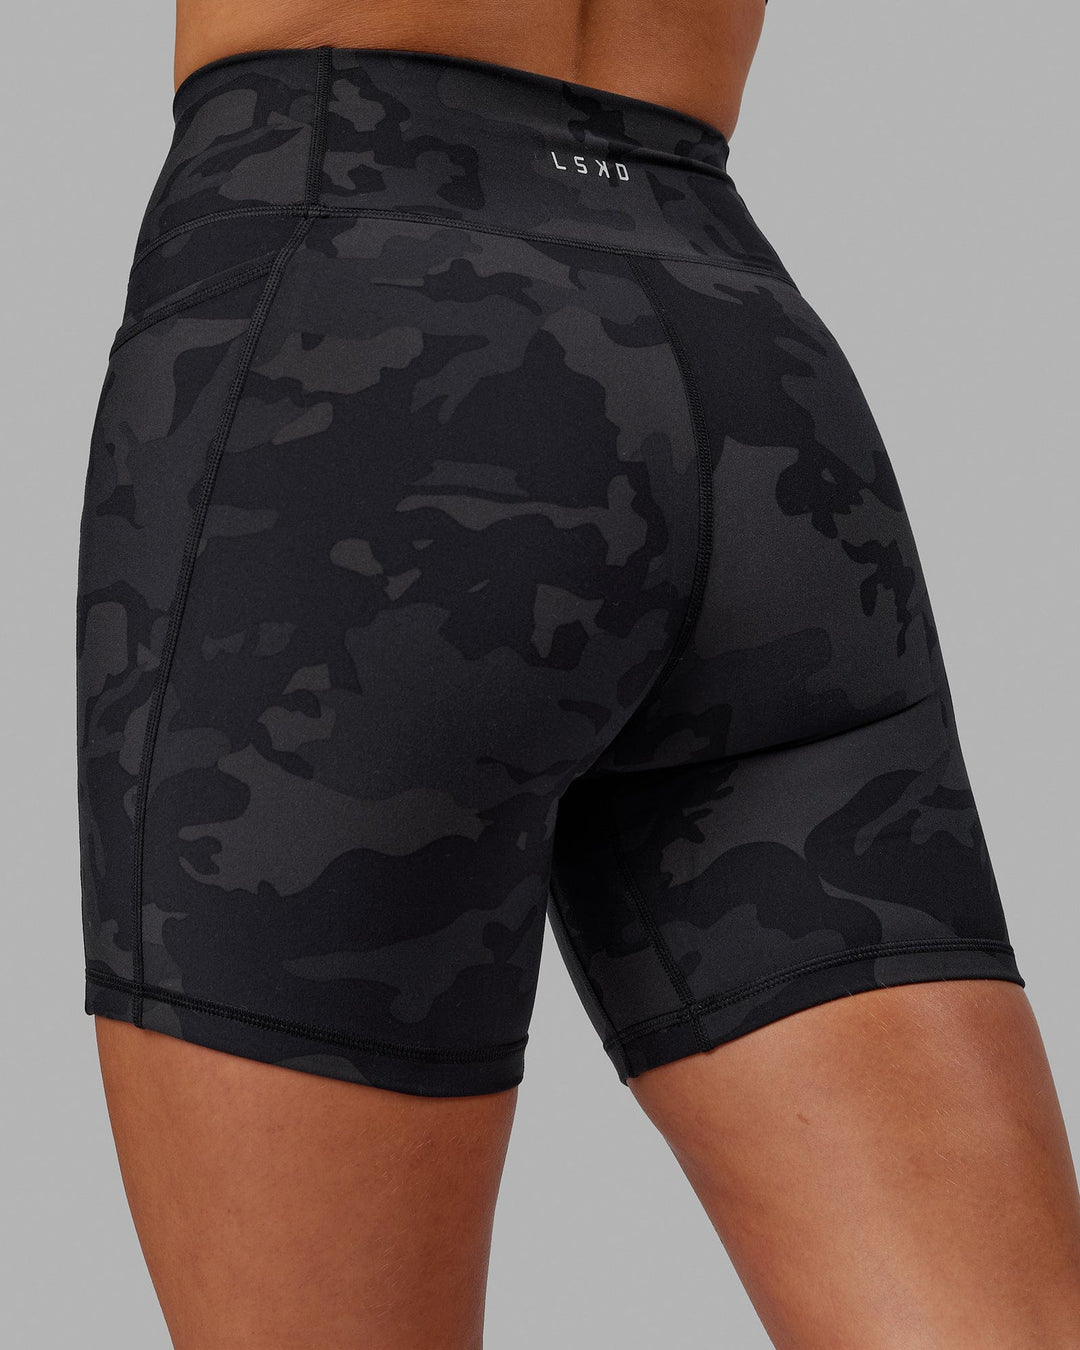 Fusion Mid-Length Shorts - Black Camo